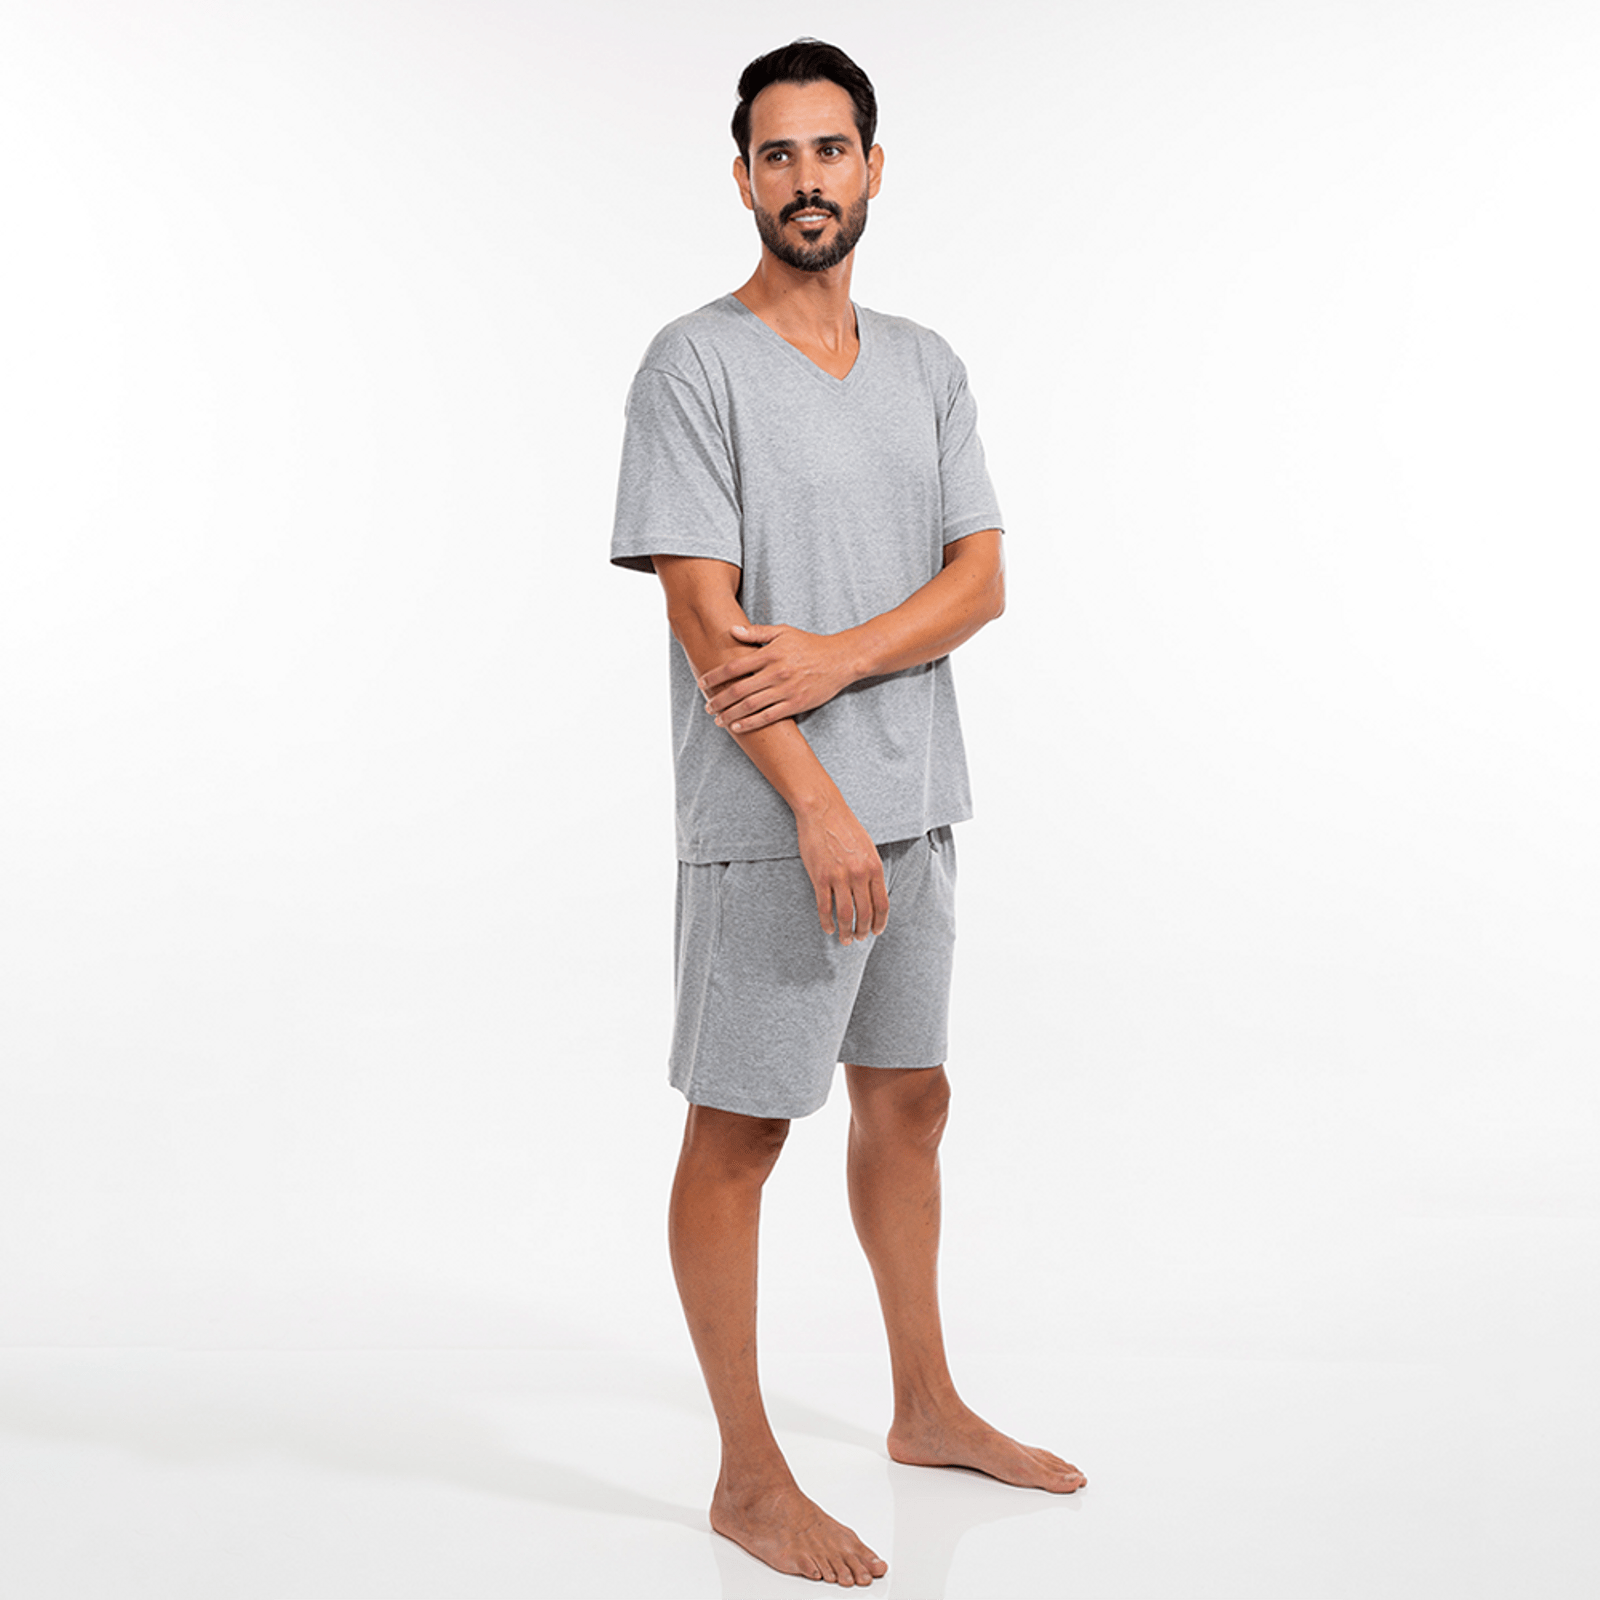 Pijama Masculino Bermuda com bolsos laterais e amarração e Blusa manga curta. Cor cinza